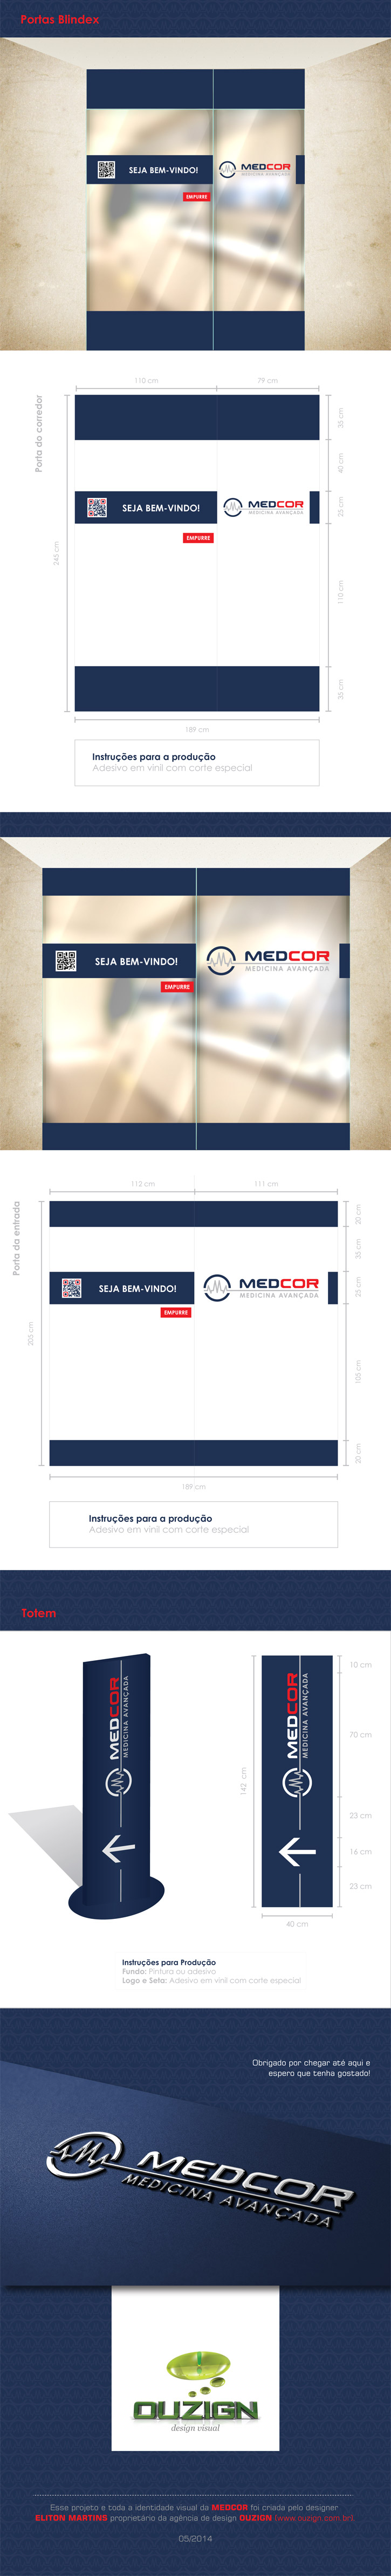 Apresentação Identidade Visual | MEDCOR - Medicina avançada (1)